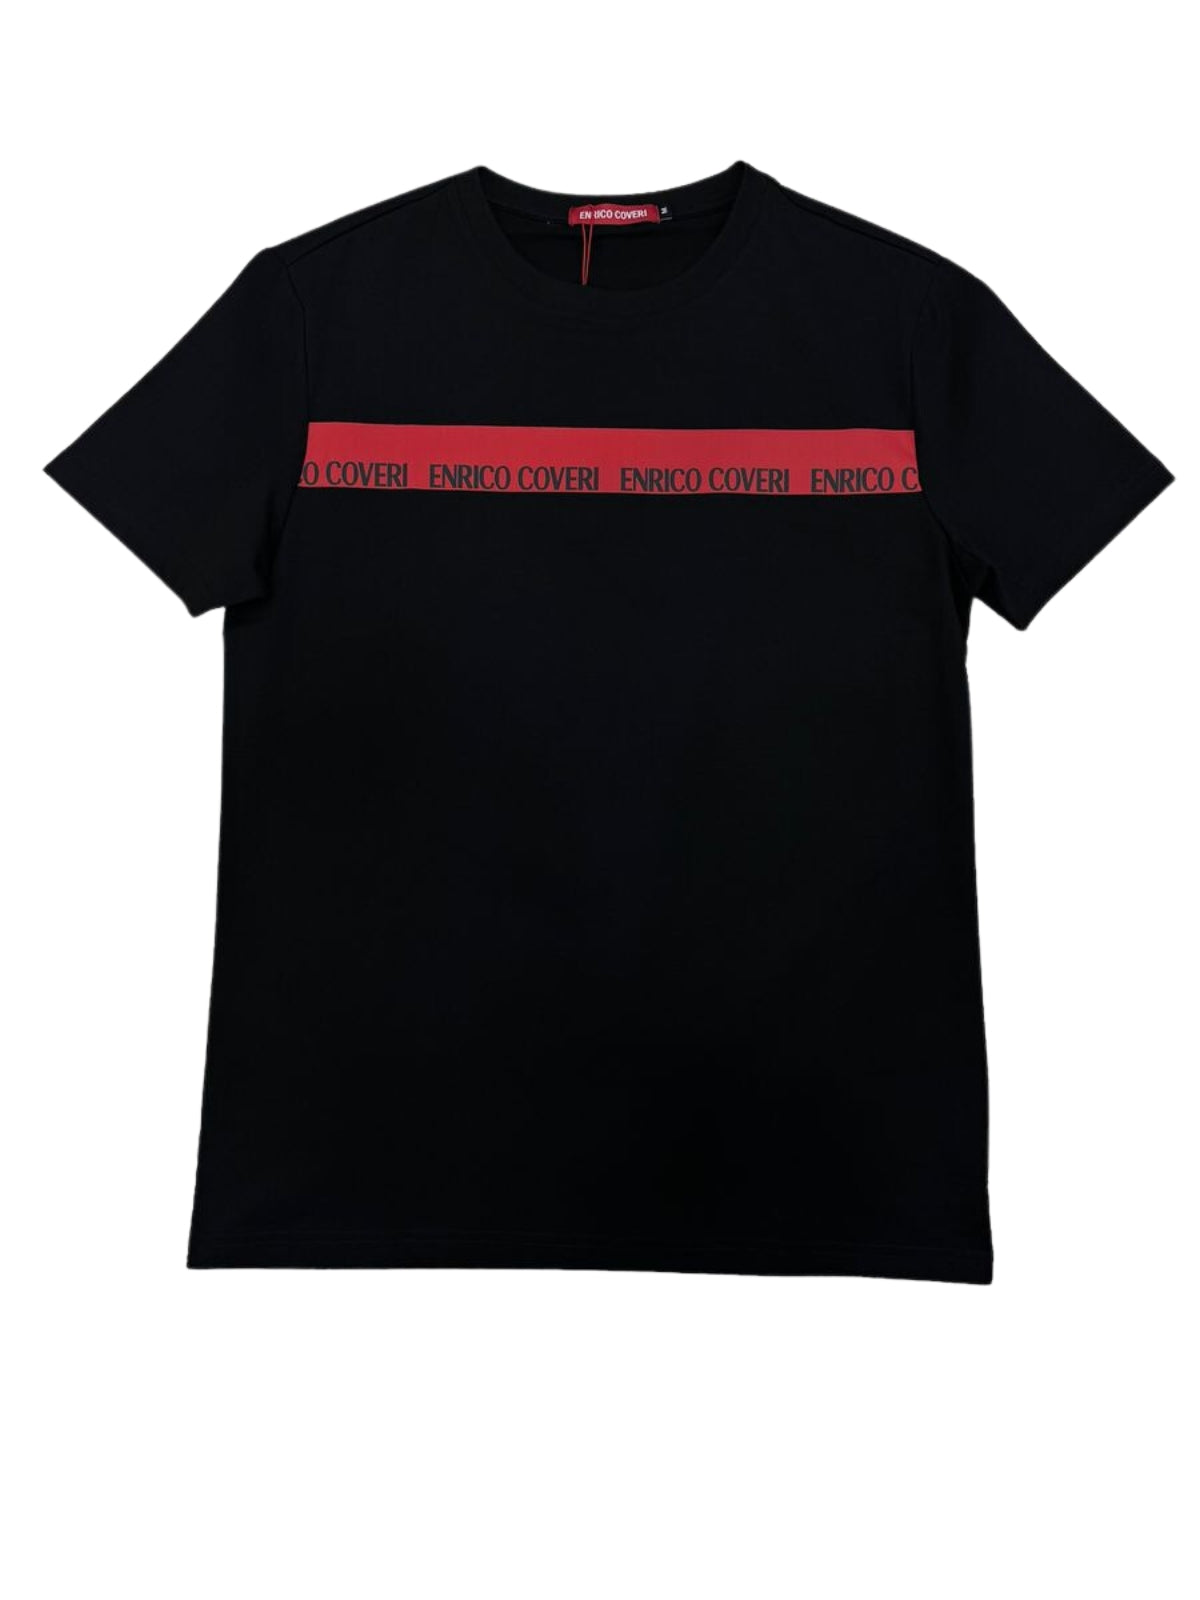 Enrico T-Shirt Tape Logo Navy Red